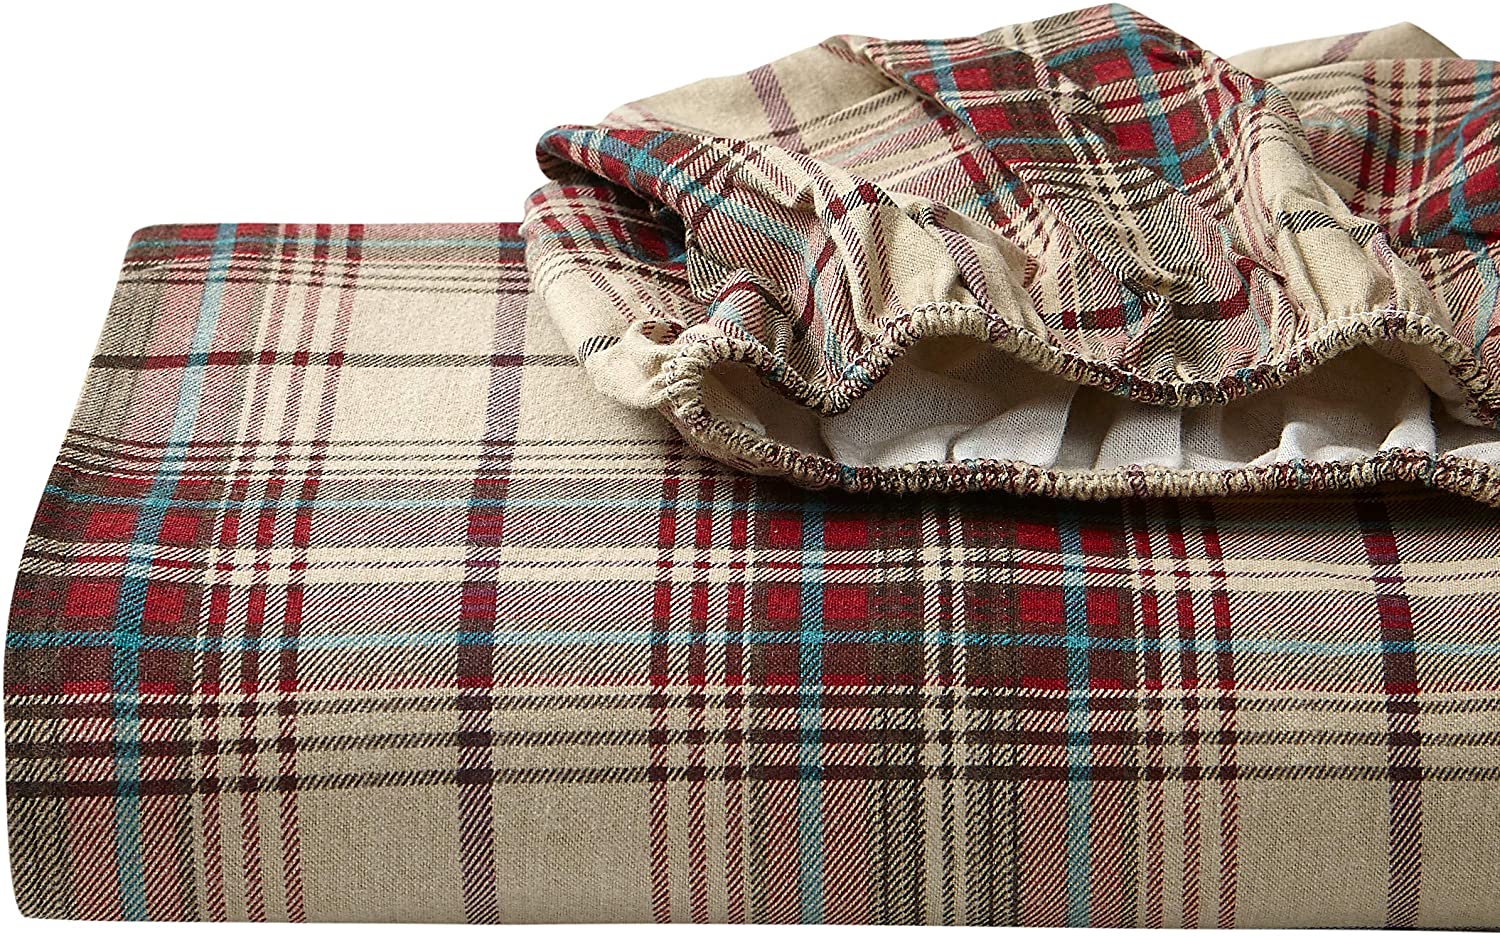 Eddie Bauer - Flannel Collection - 100% Premium Cotton Bedding Sheet Set, Pre-Sh Nowy, 100% nowy